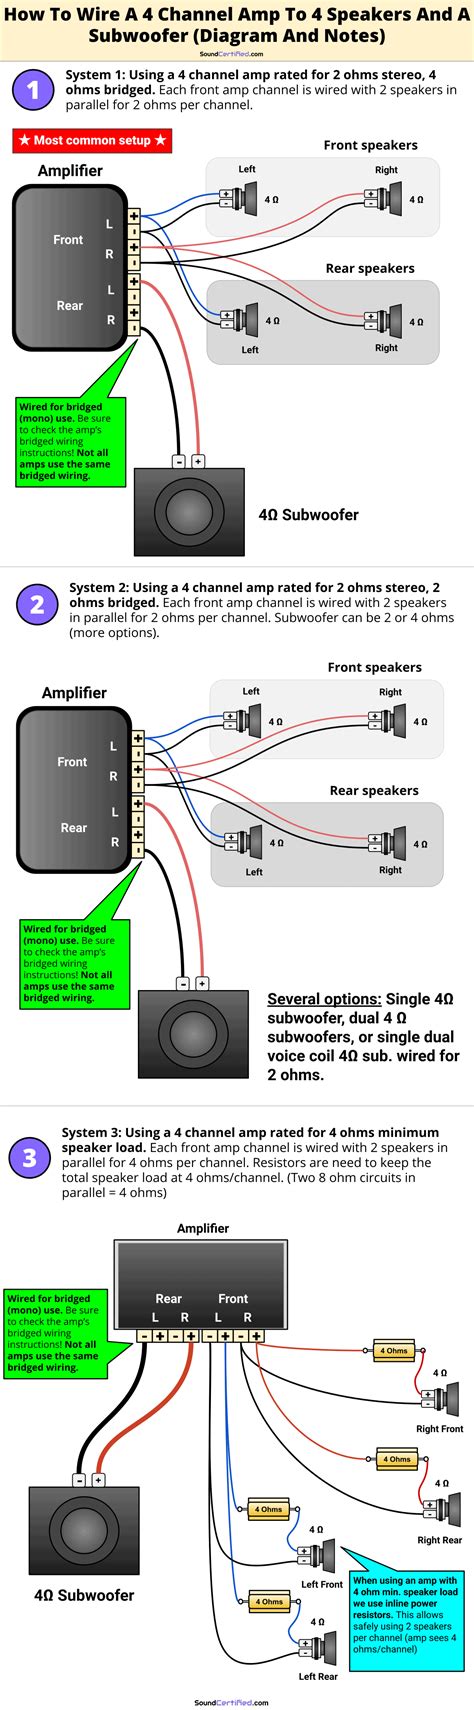 amps  subs wiring diagram synovium diagram